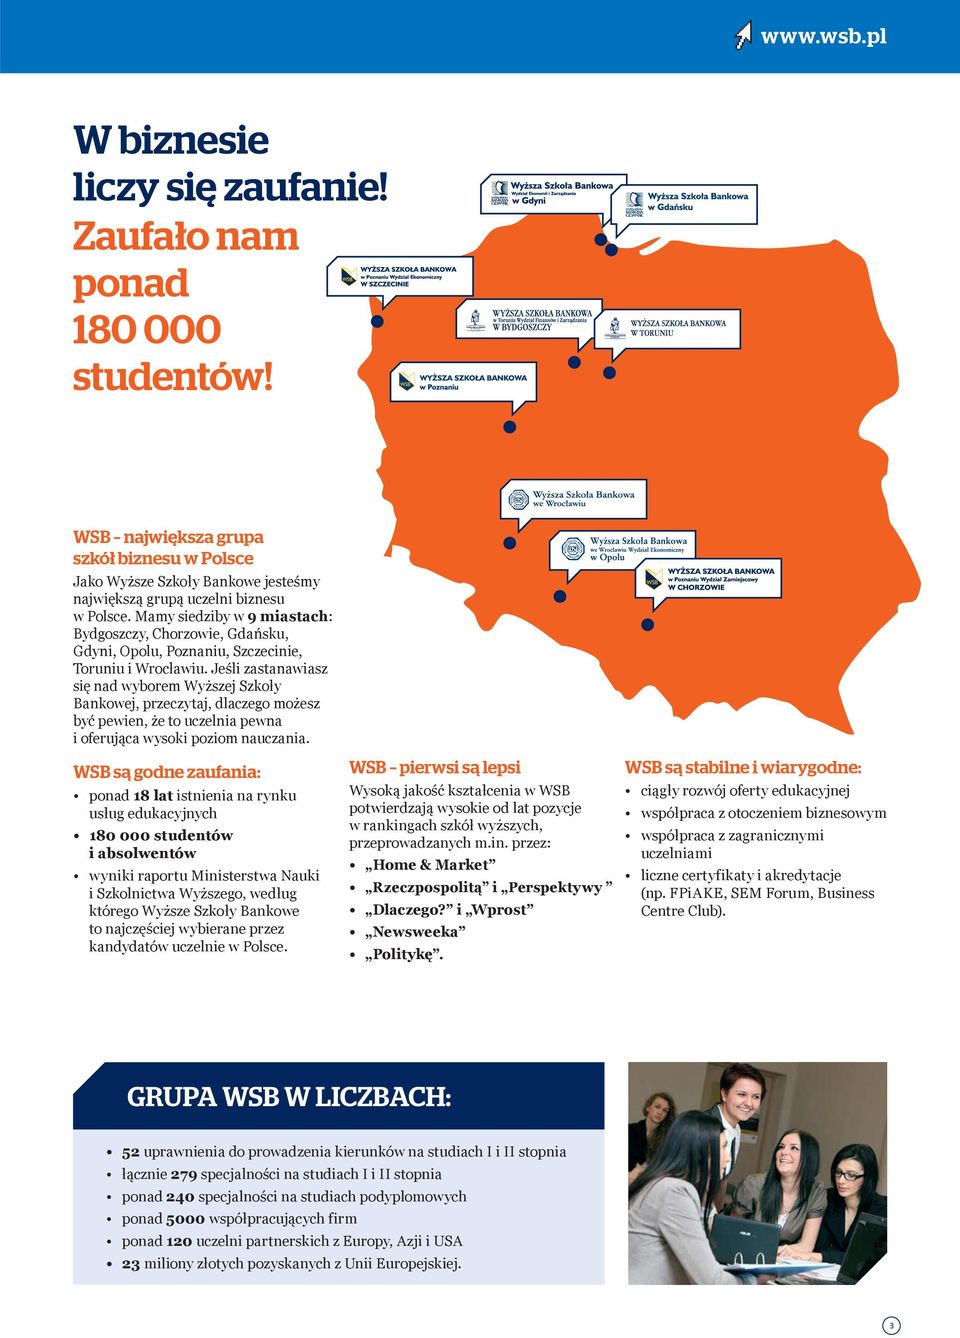 Mamy siedziby w 9 miastach: Bydgoszczy, Chorzowie, Gdańsku, Gdyni, Opolu, Poznaniu, Szczecinie, Toruniu i Wrocławiu.